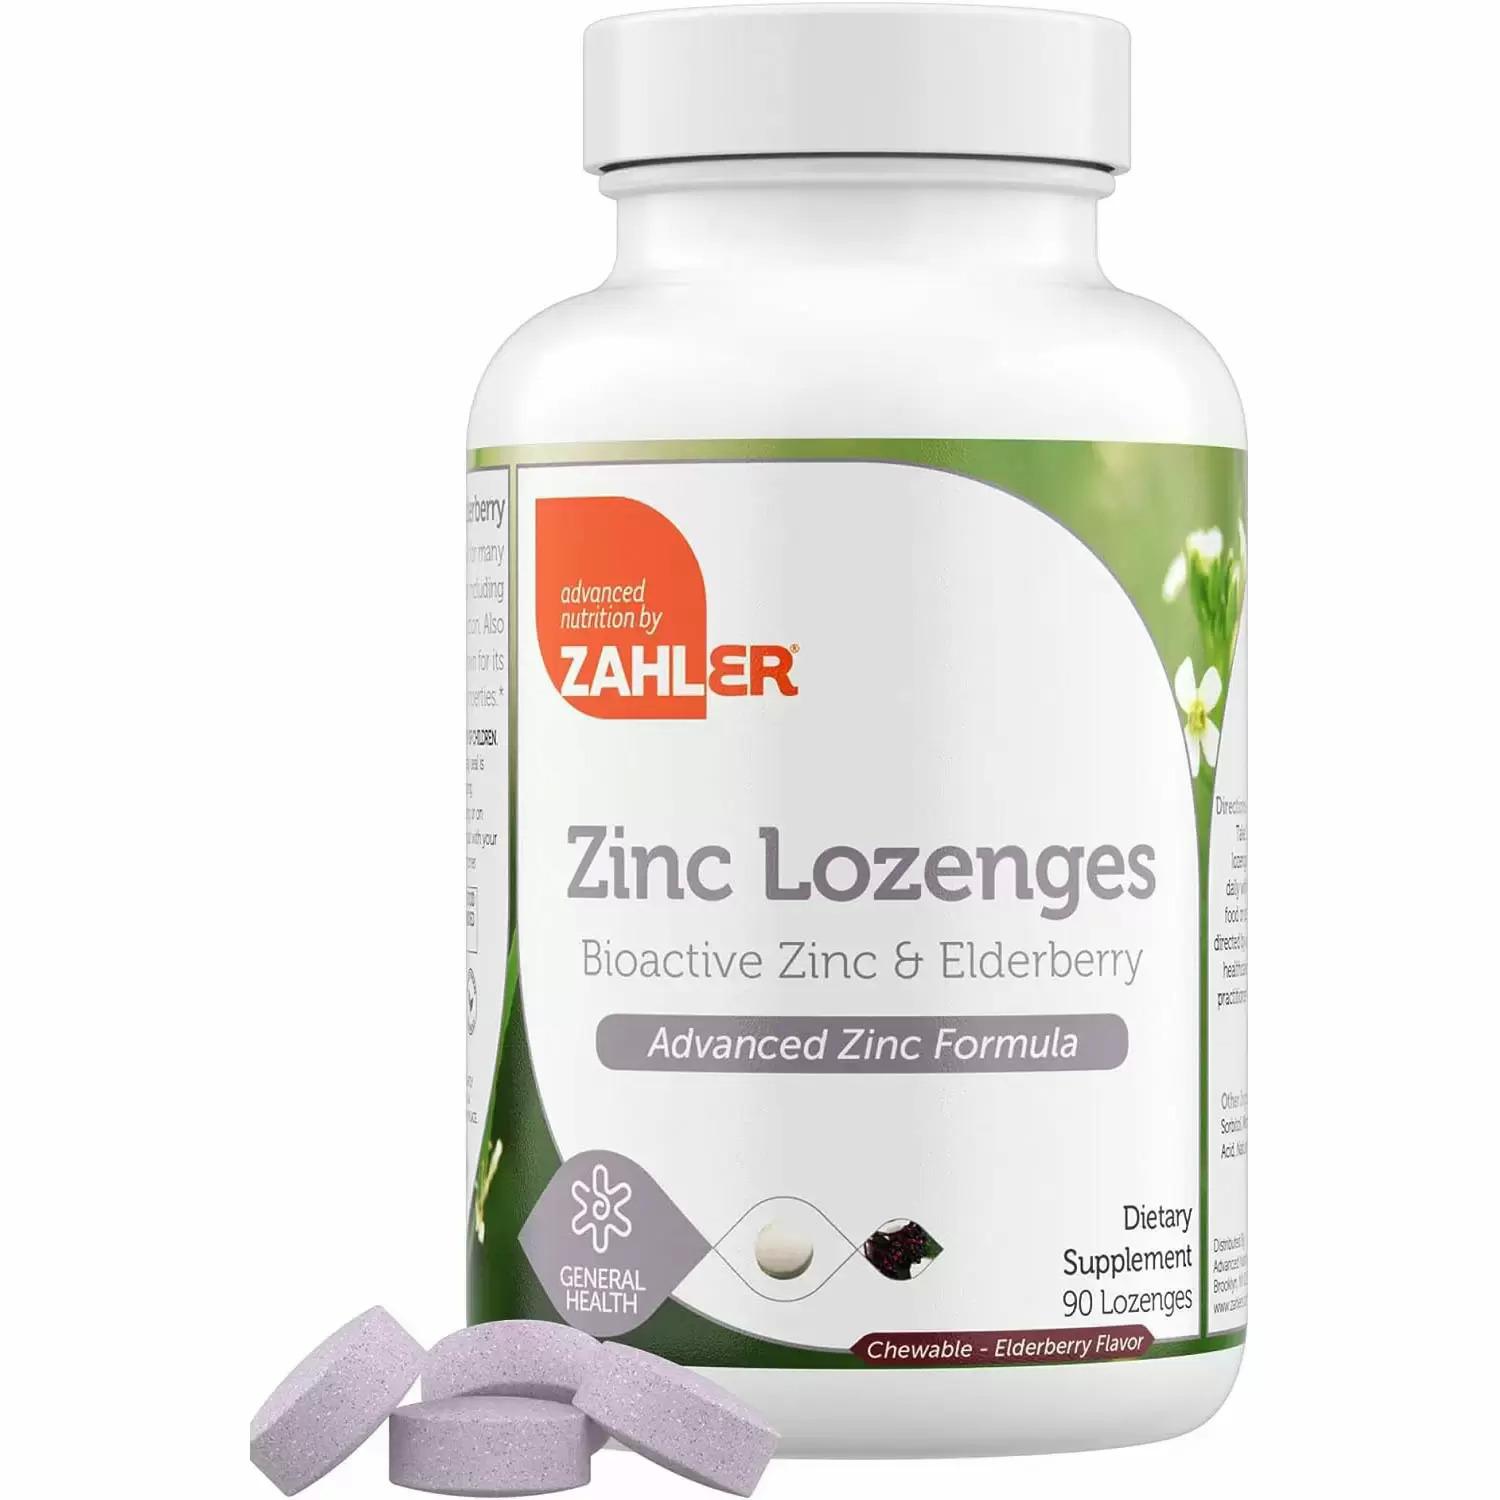 Zahler Delicious Chewable Elderberry Zinc Lozenges for $4.51 Shipped